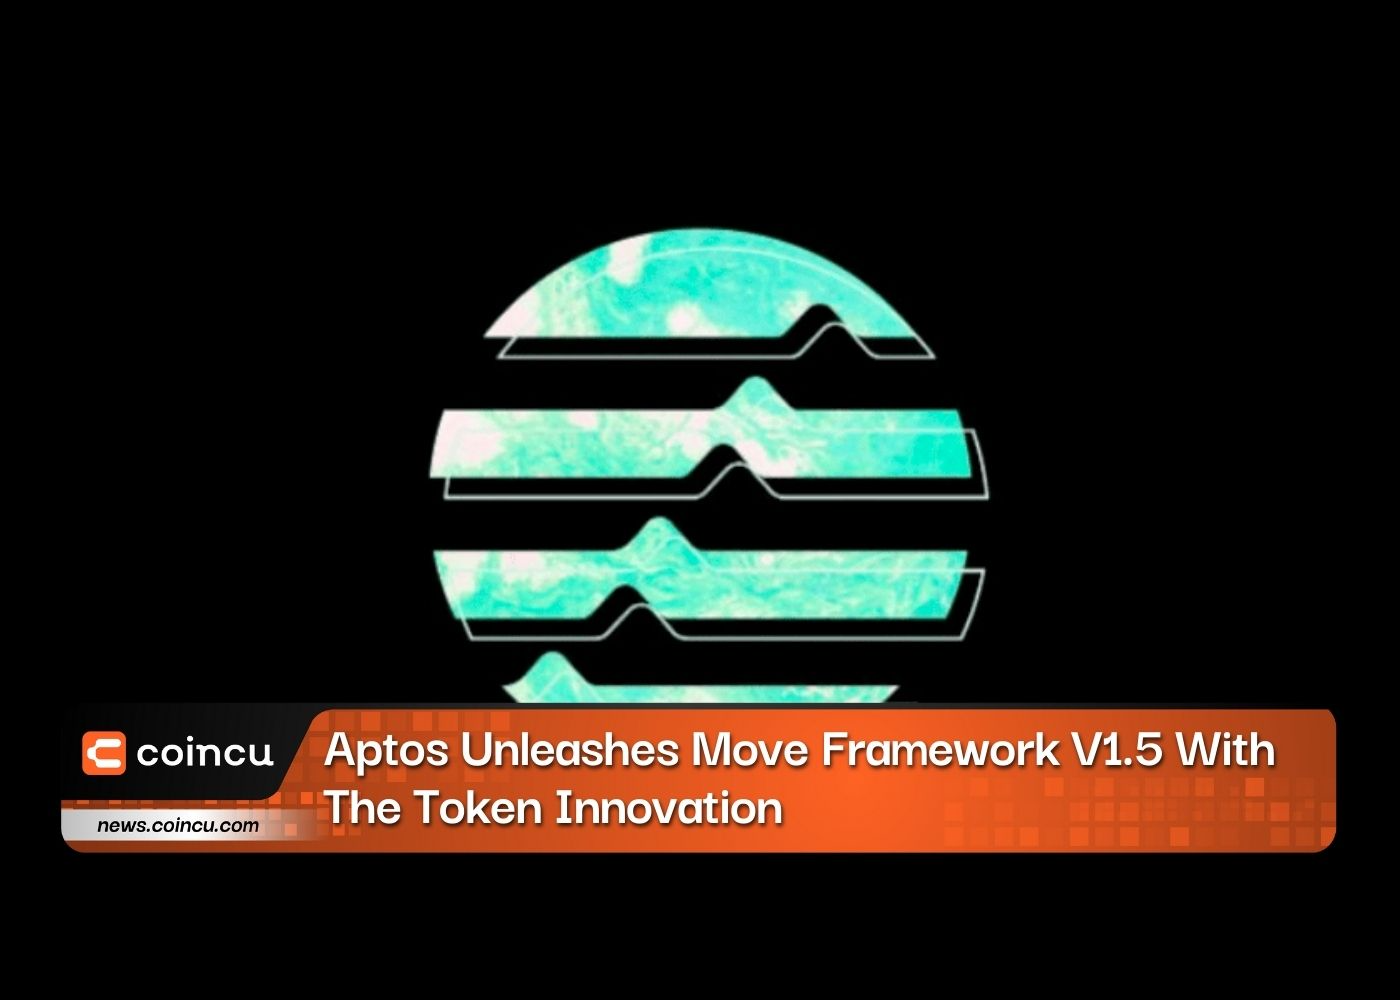 Aptos lança Move Framework V1.5 com inovação de token